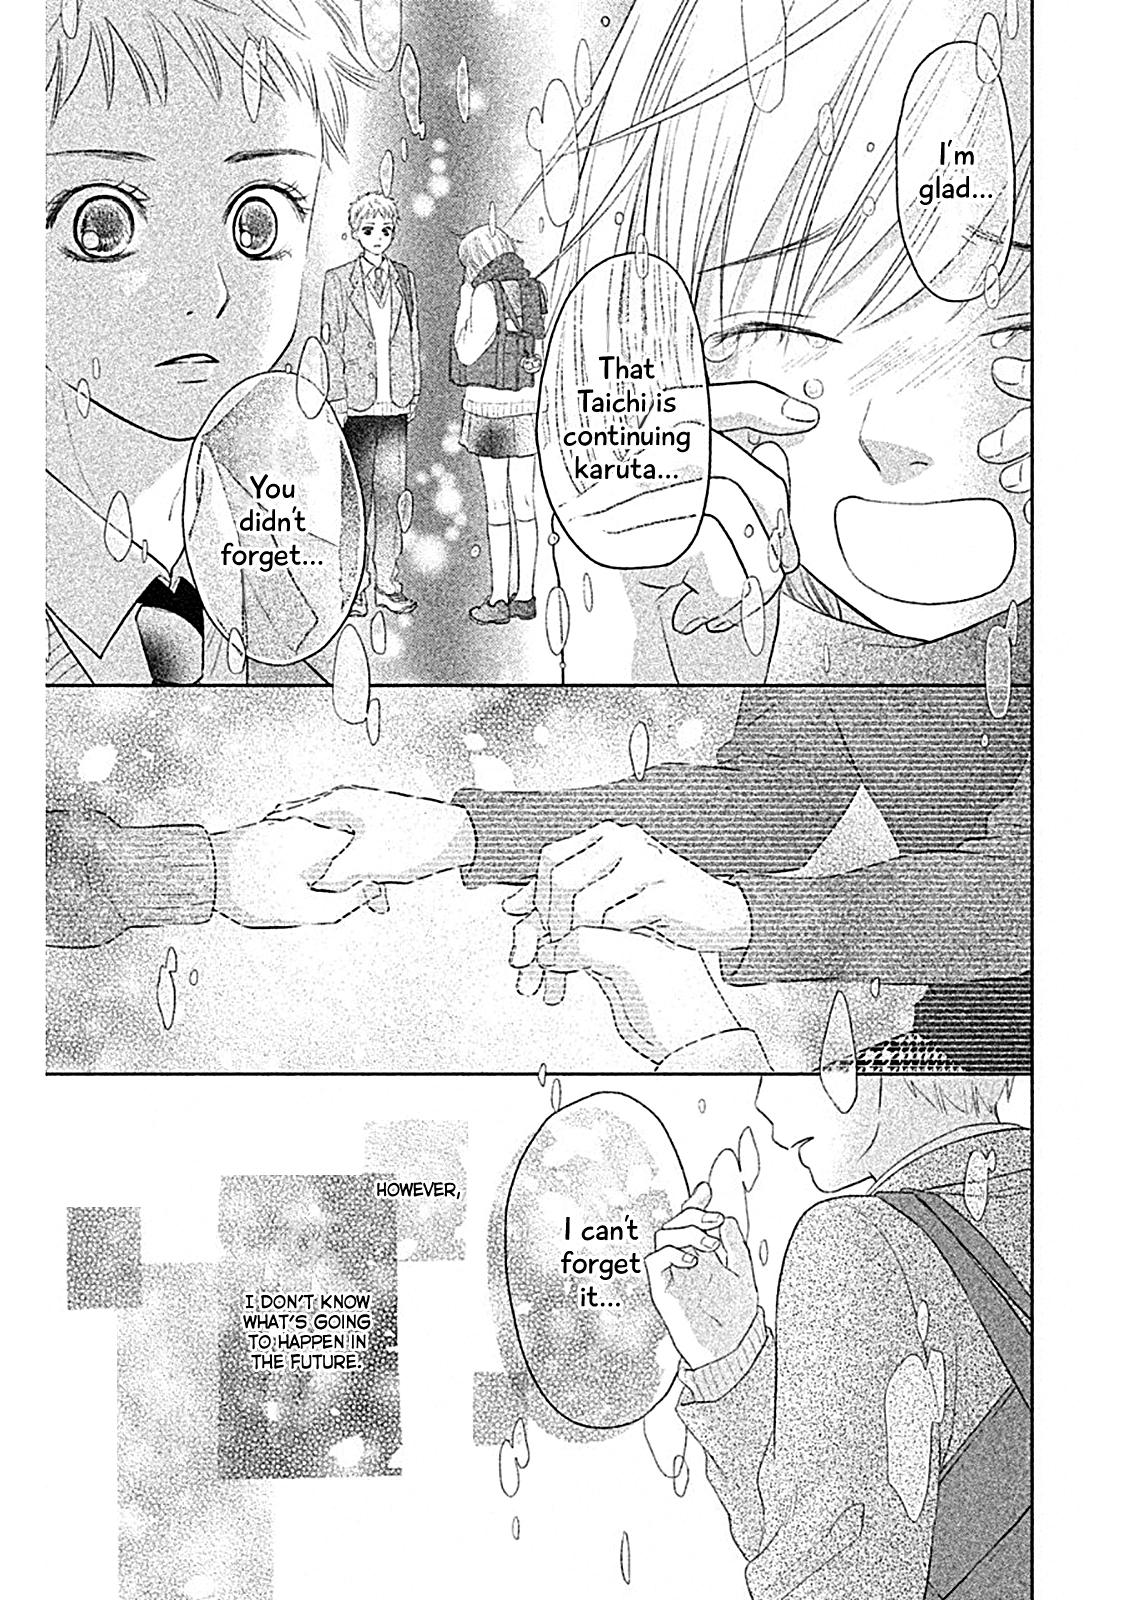 Chihayafuru: Middle School Arc Vol. 1 Ch. 5 5th Poem